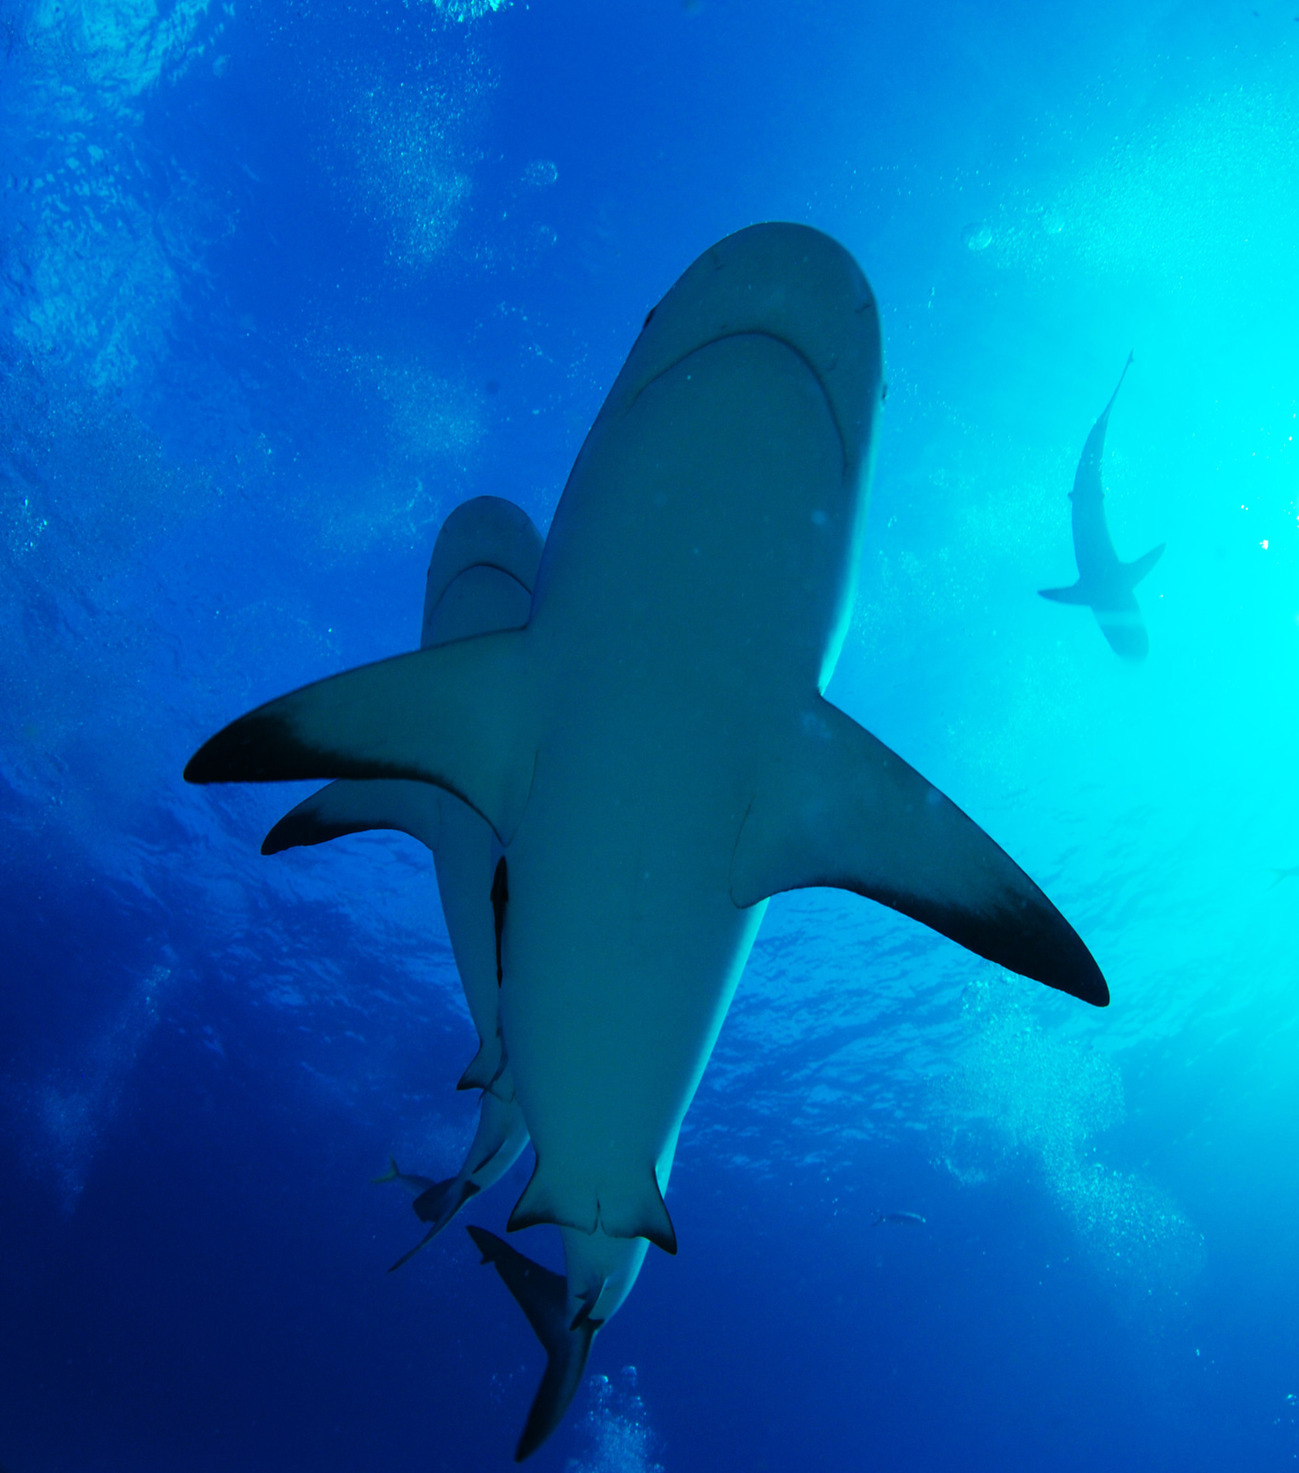 Shark, доод харагдац. Бахама мужид авсан зураг